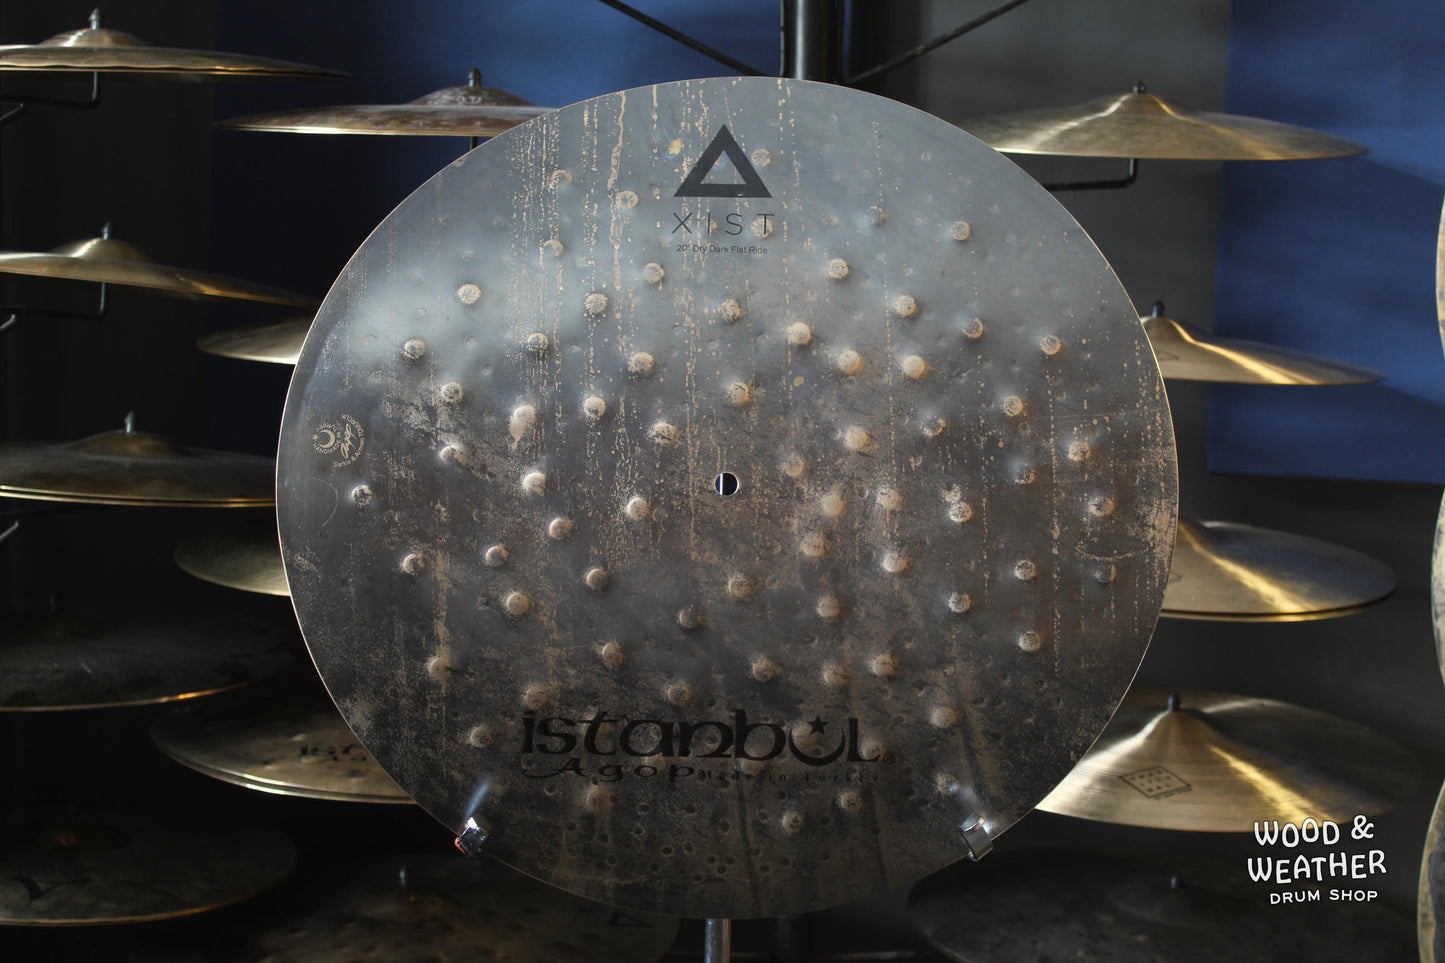 Istanbul Agop 20" Xist Dry Dark Flat Cymbal